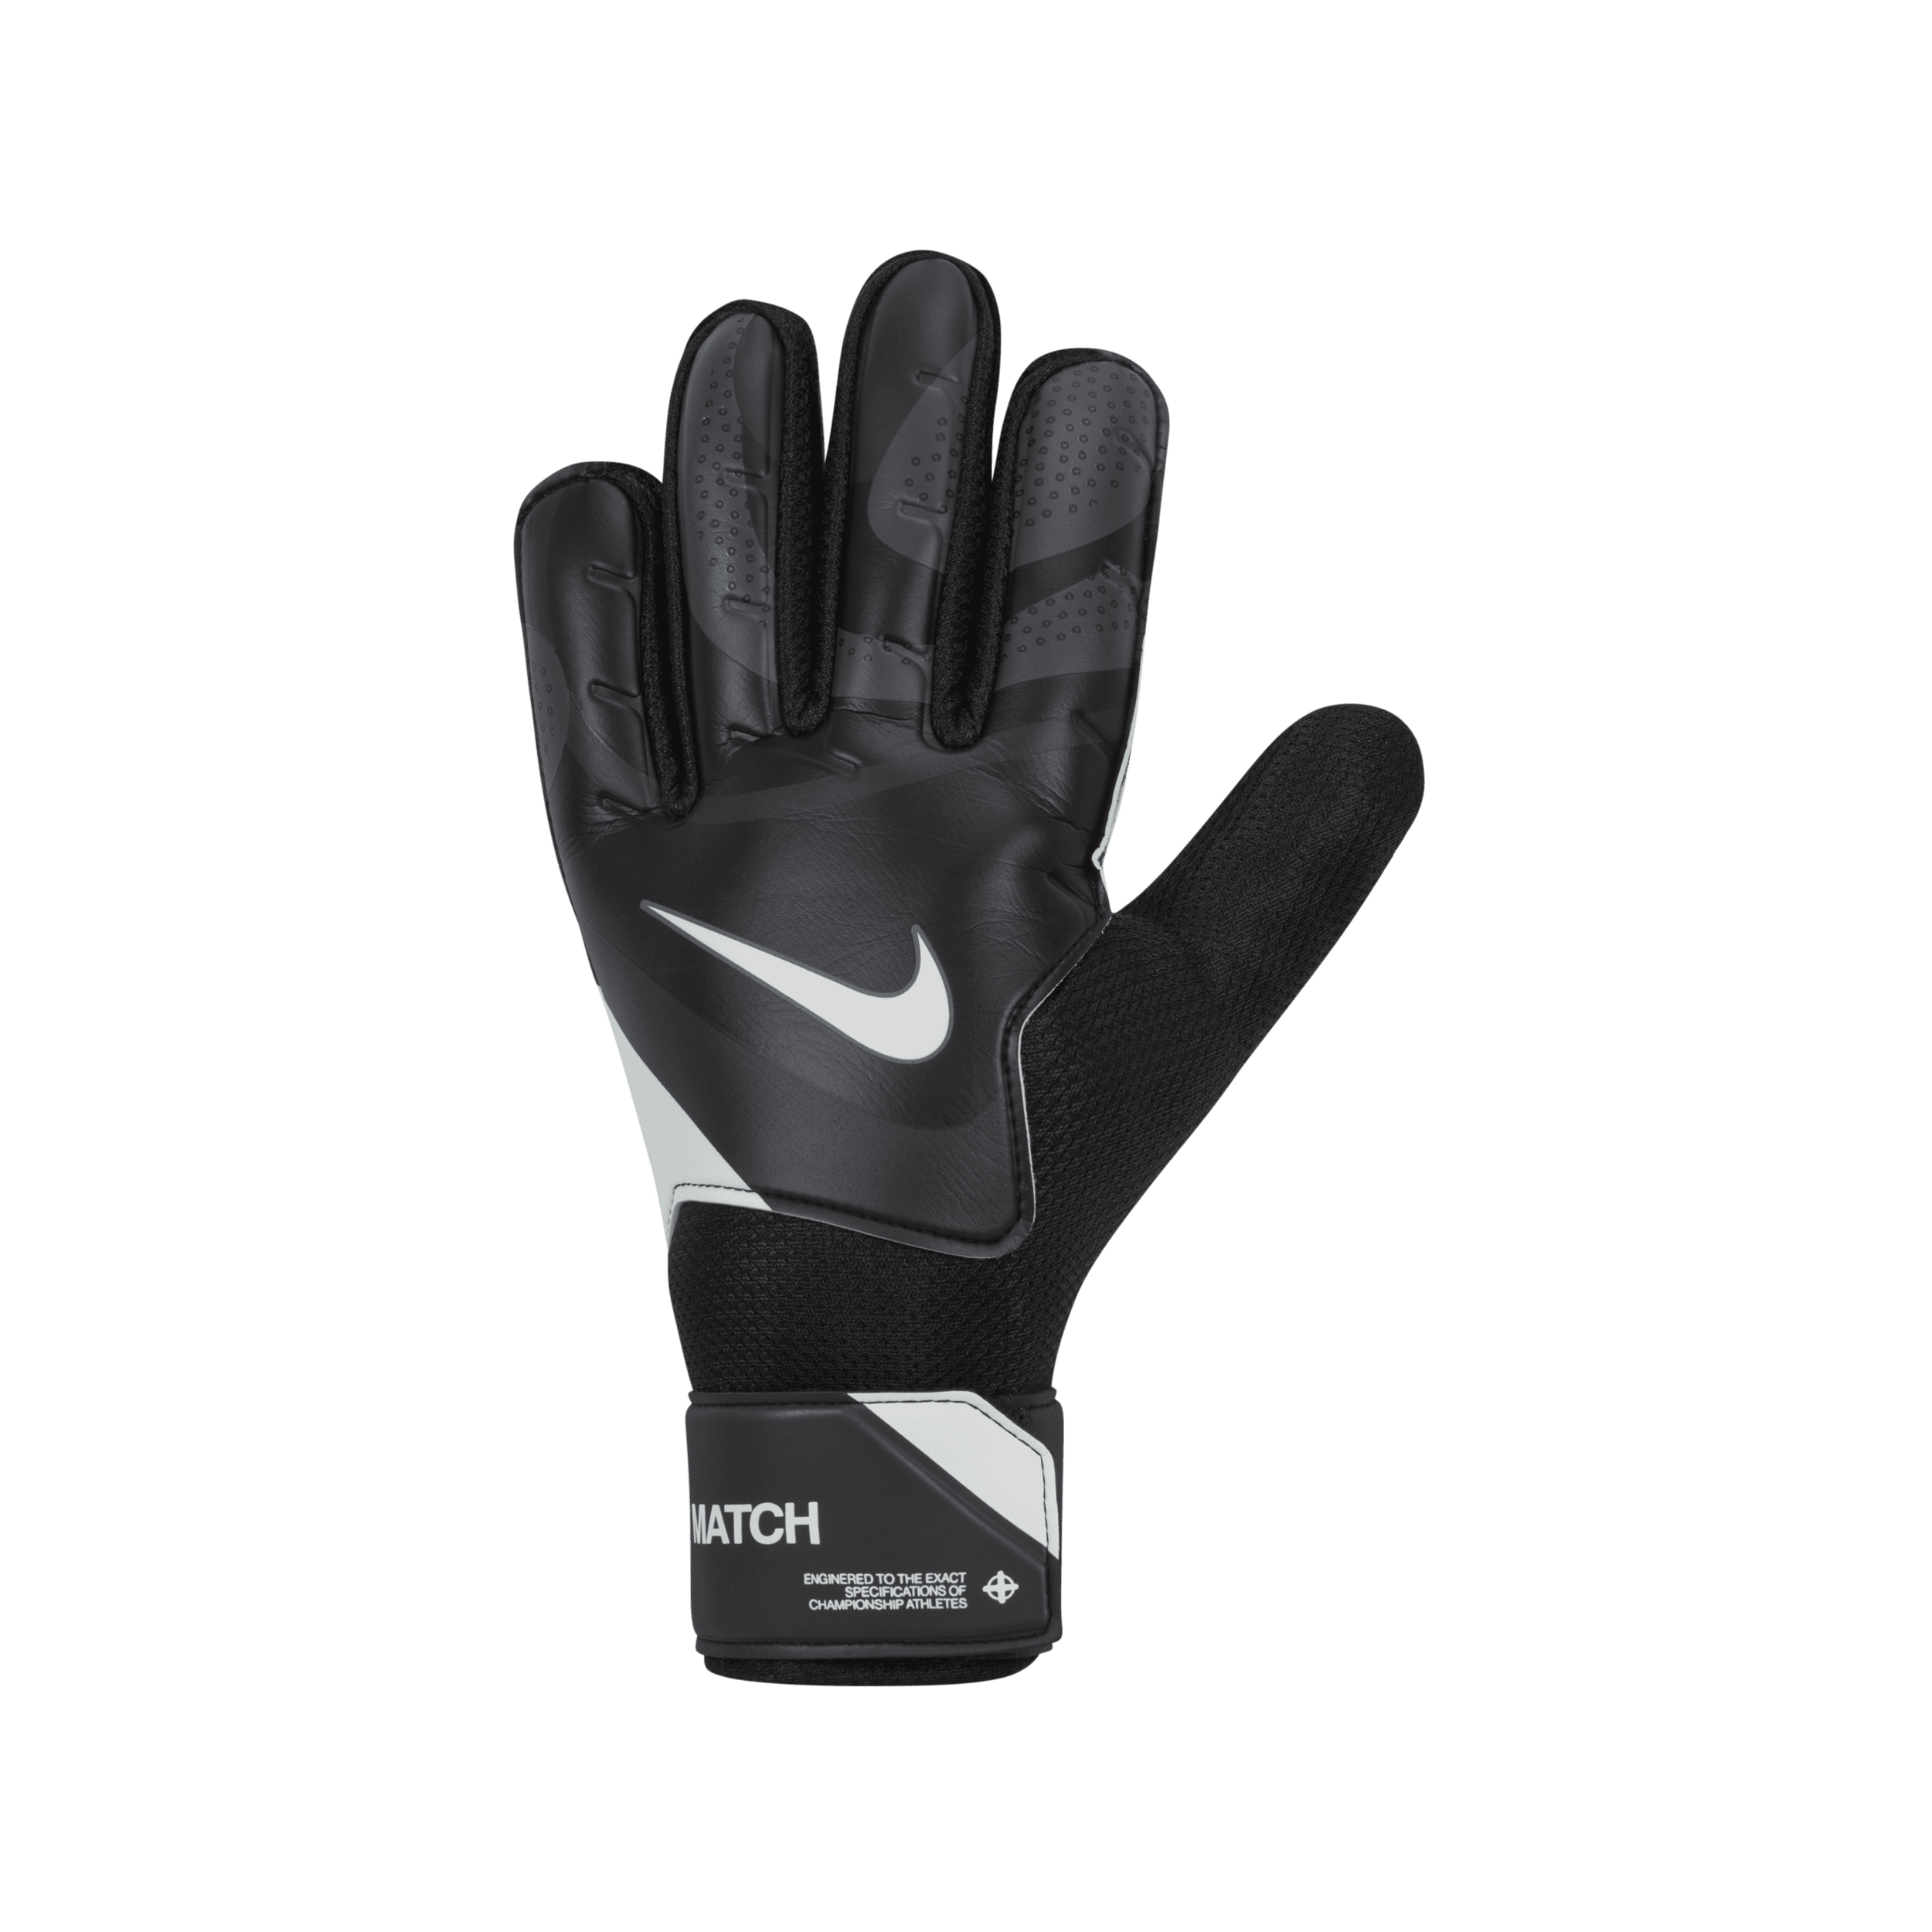 Nike Match keeperhandschoenen - Zwart